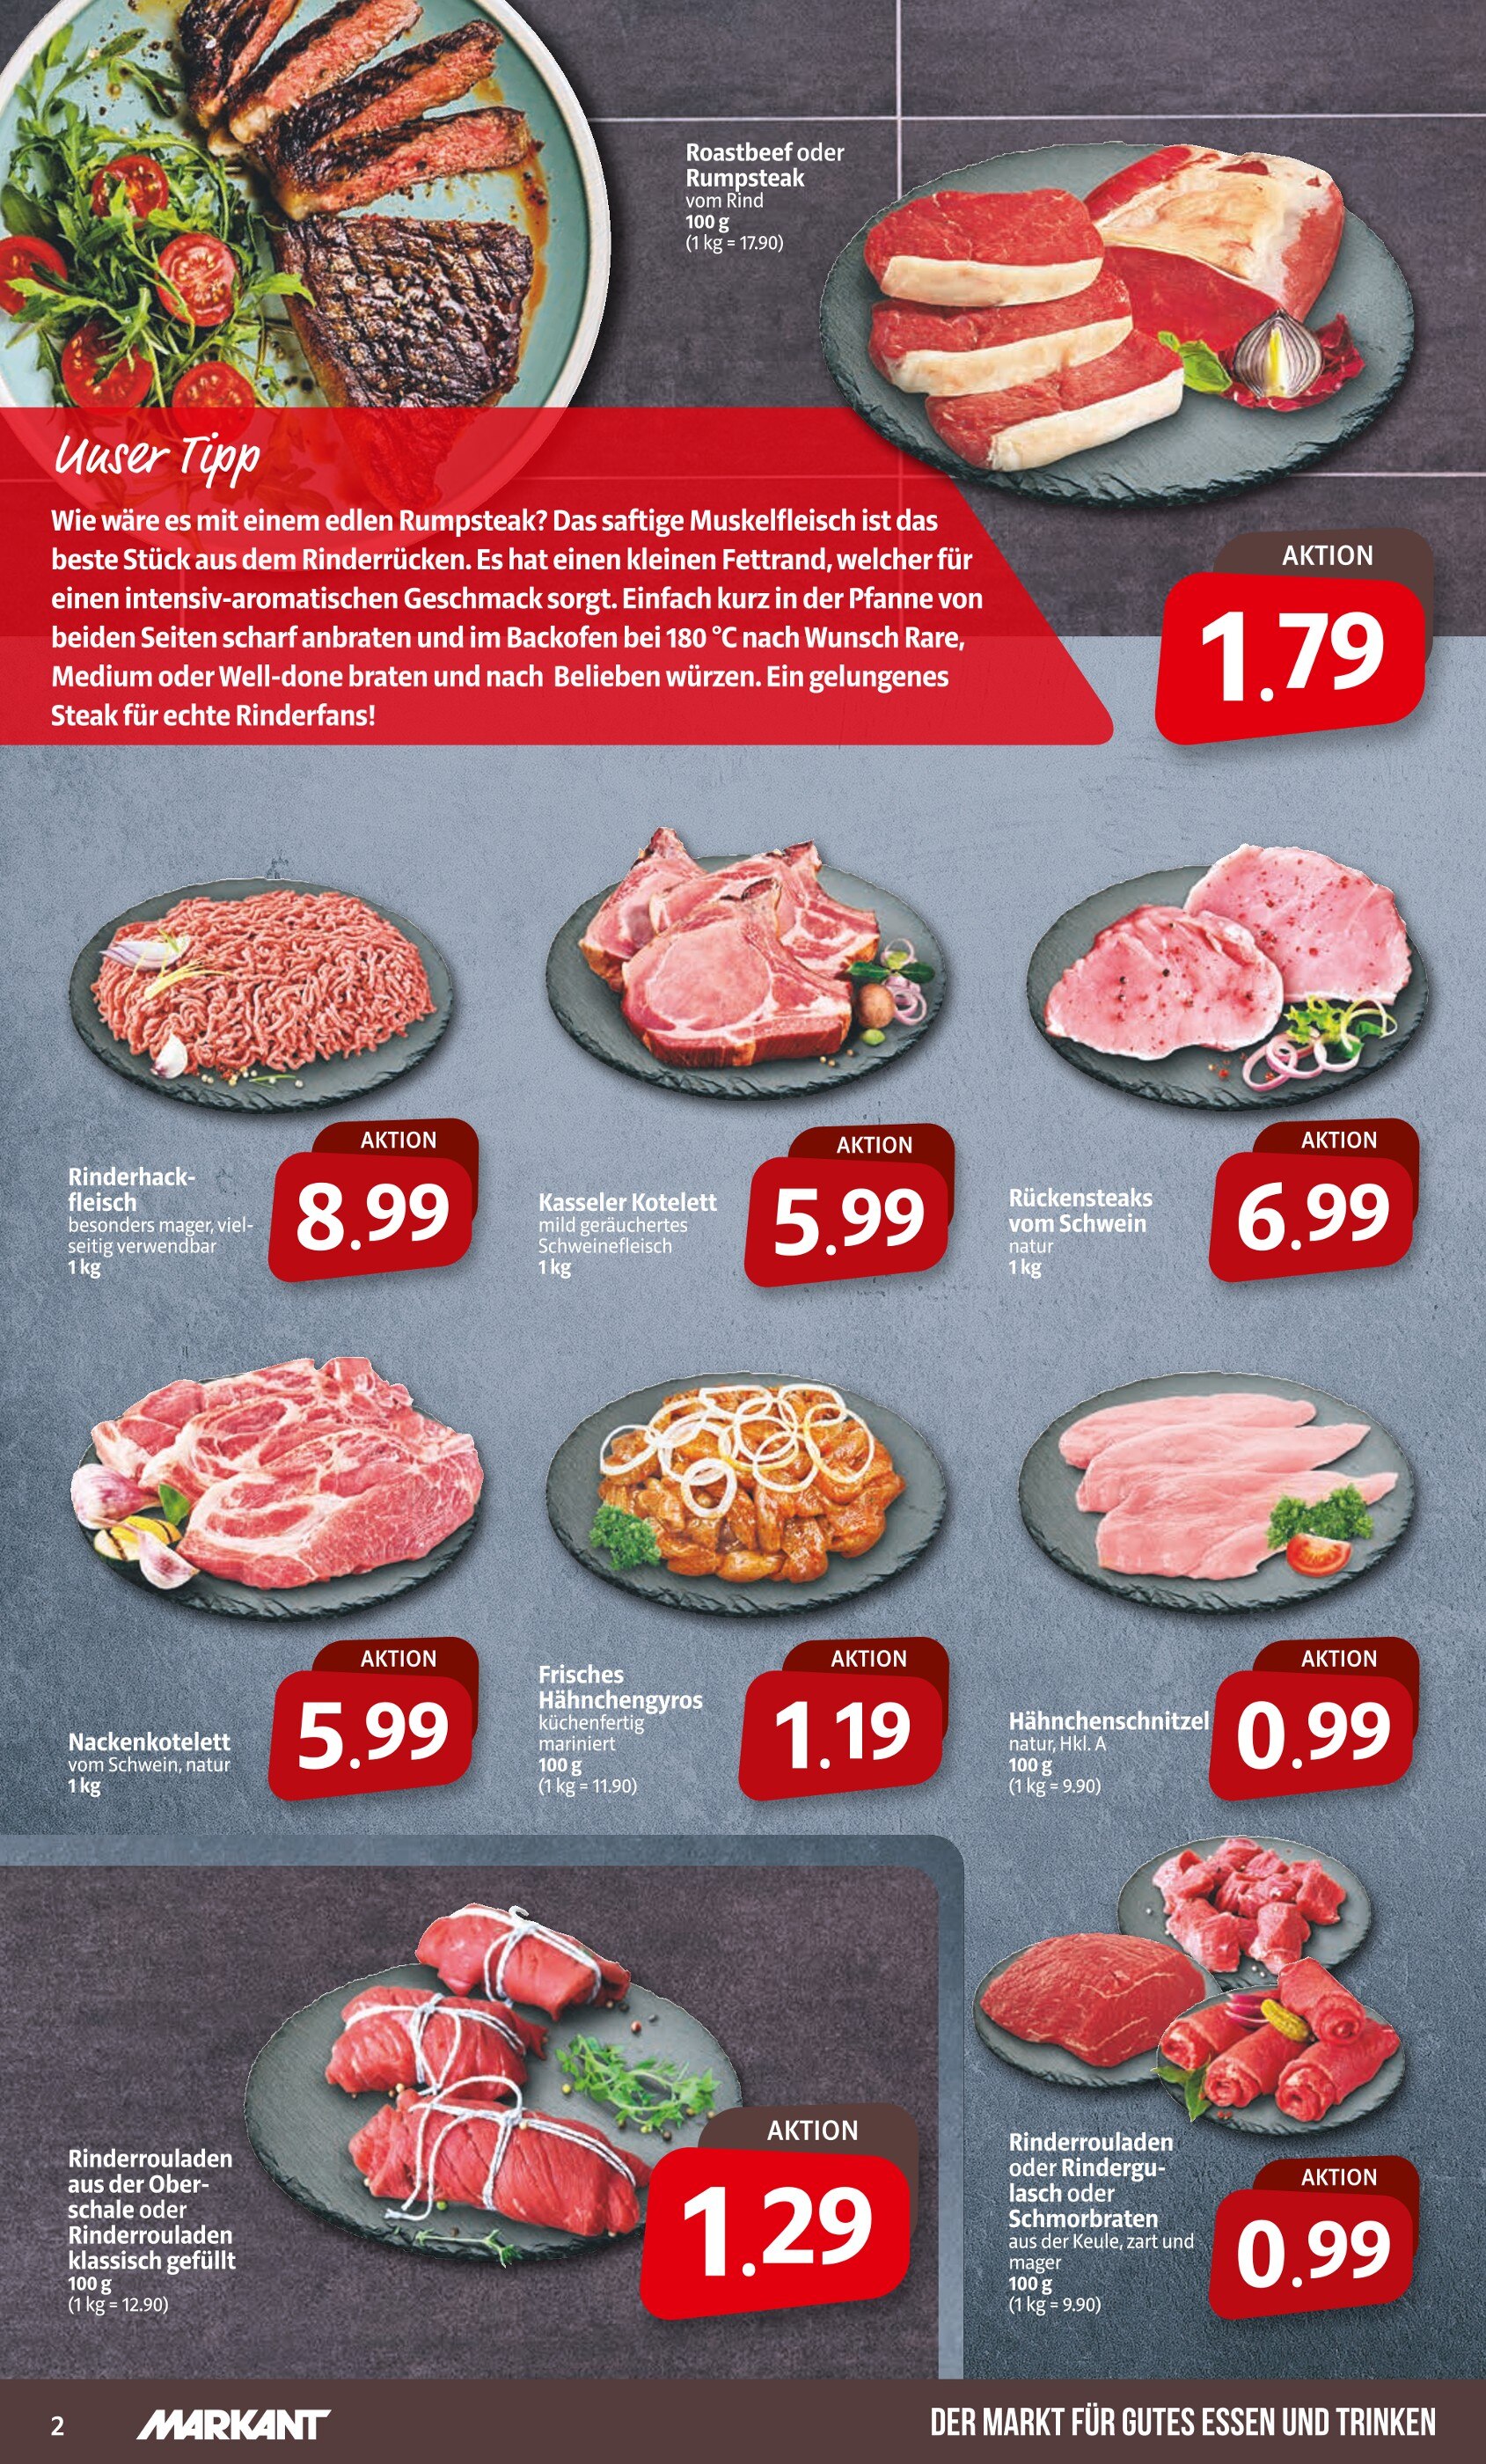 Steak kaufen in Langenhagen - Langenhagen günstige Angebote in